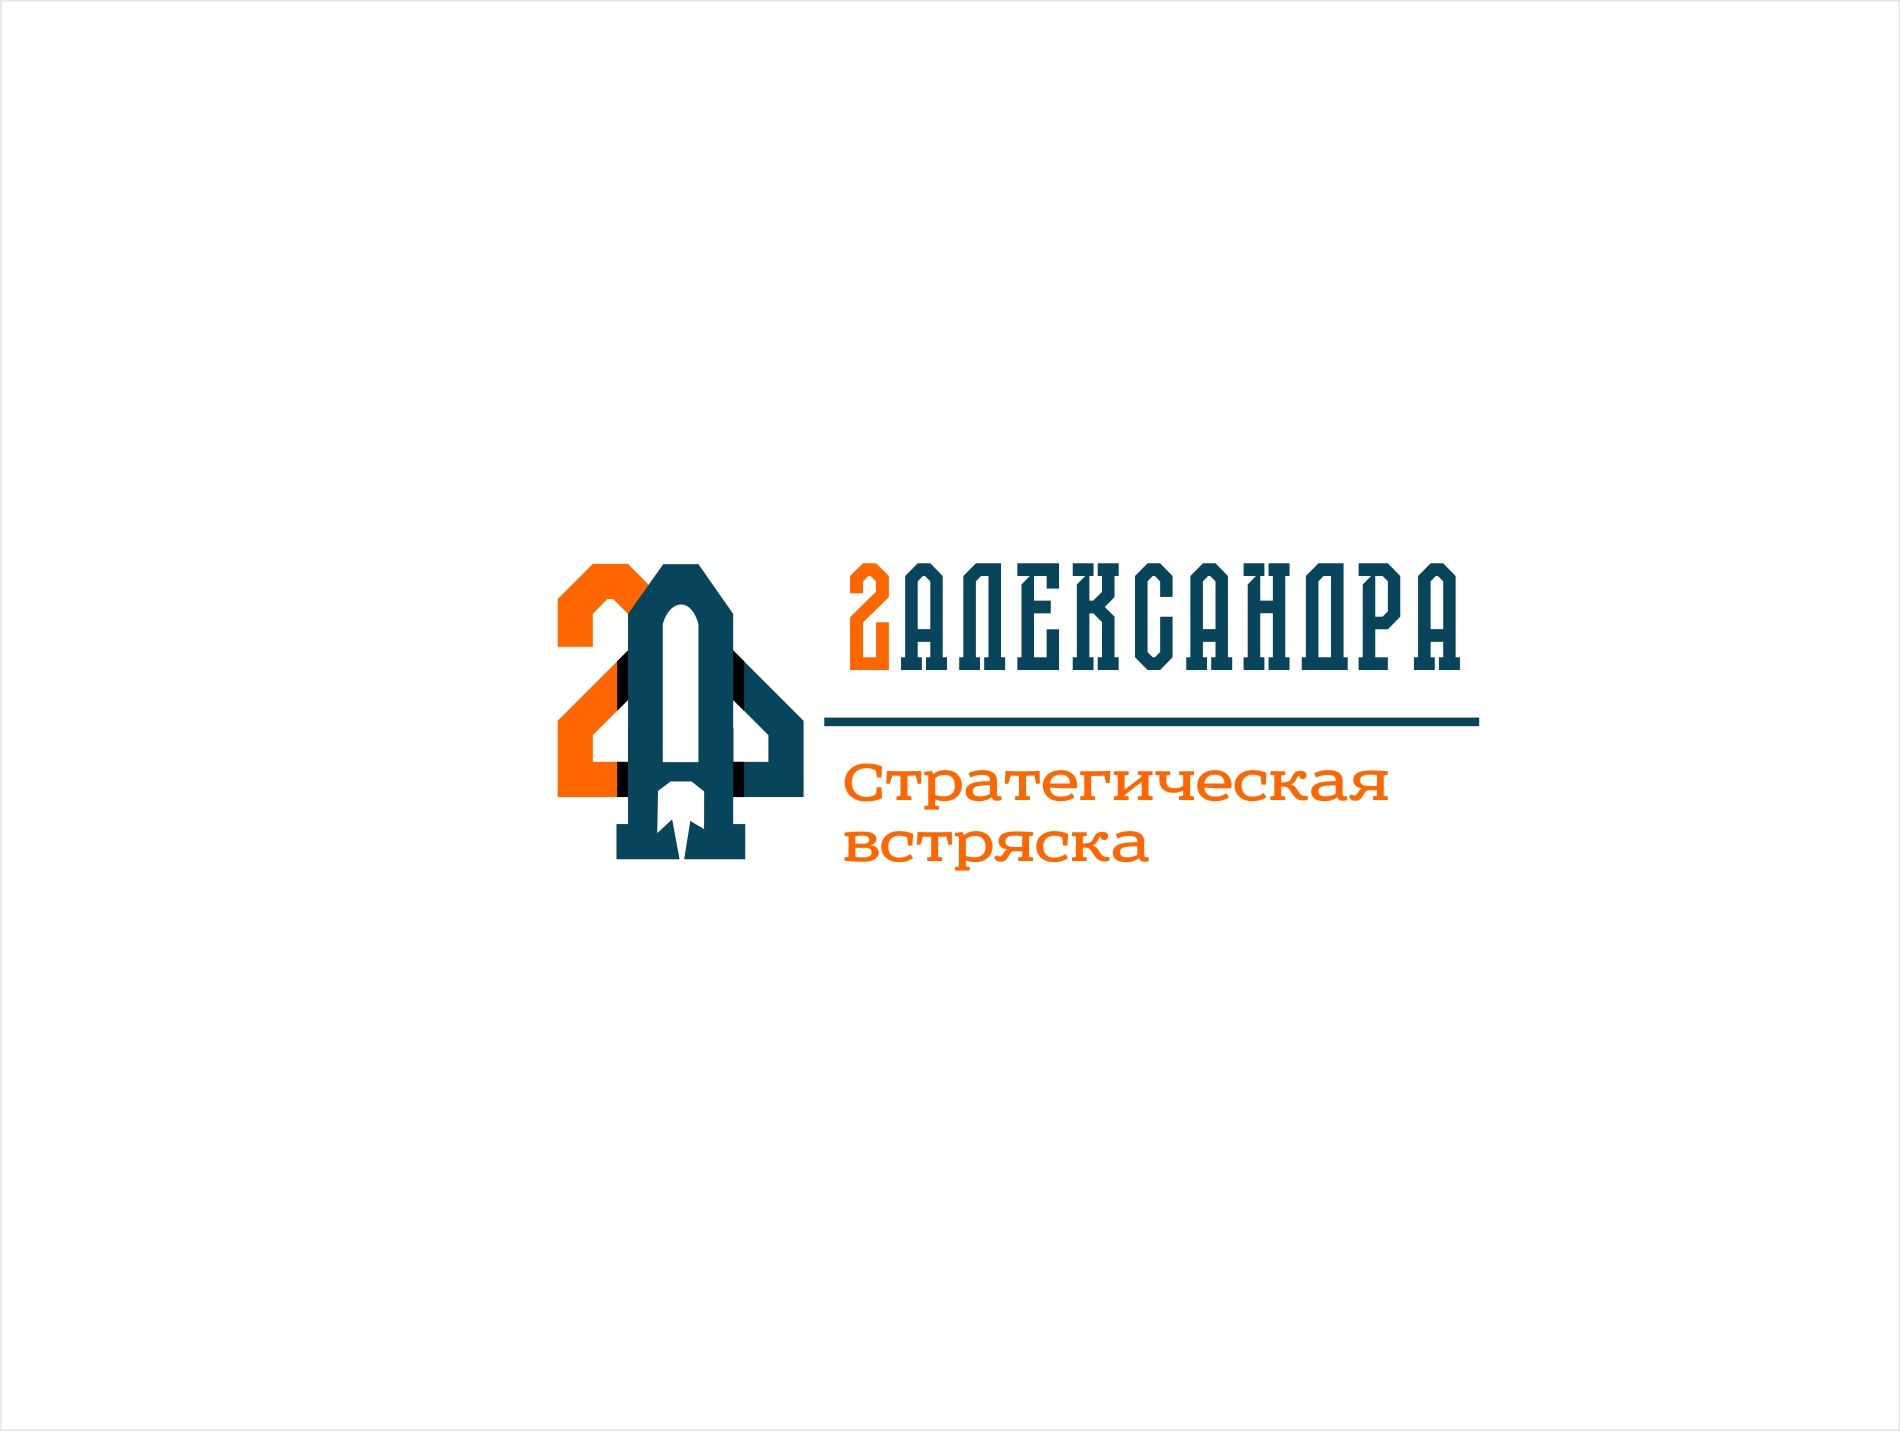 Логотип для 2Александра Стратегическая встряска - дизайнер kras-sky